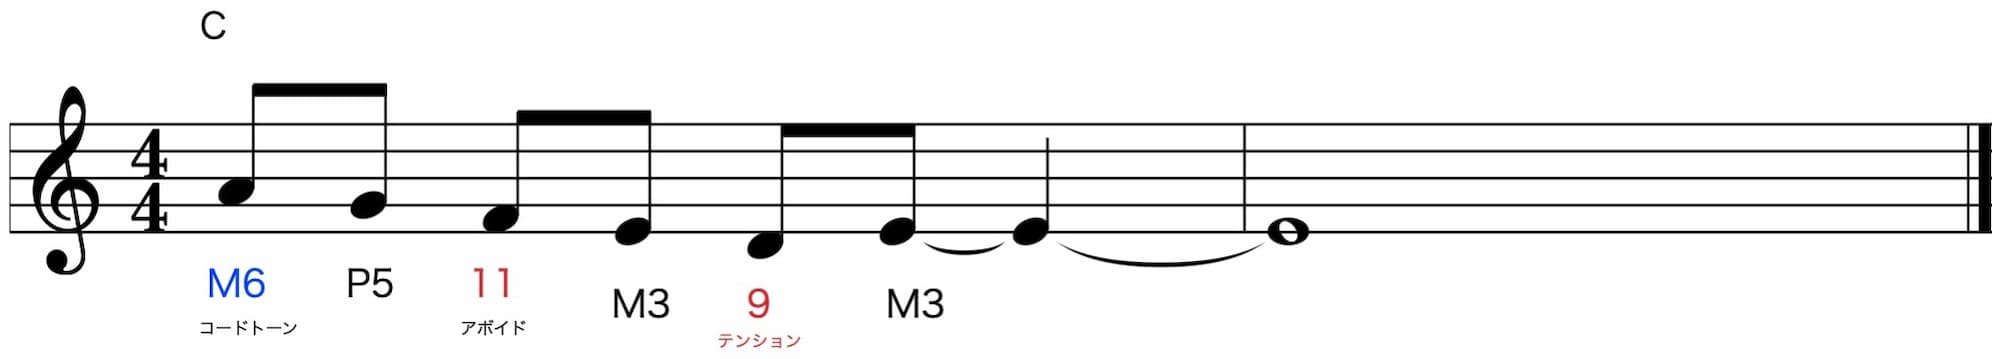 Harmonizing Etude メロディをハーモナイズする Cトライアドに対してM6はコードトーン 11はアボイド 9はテンション